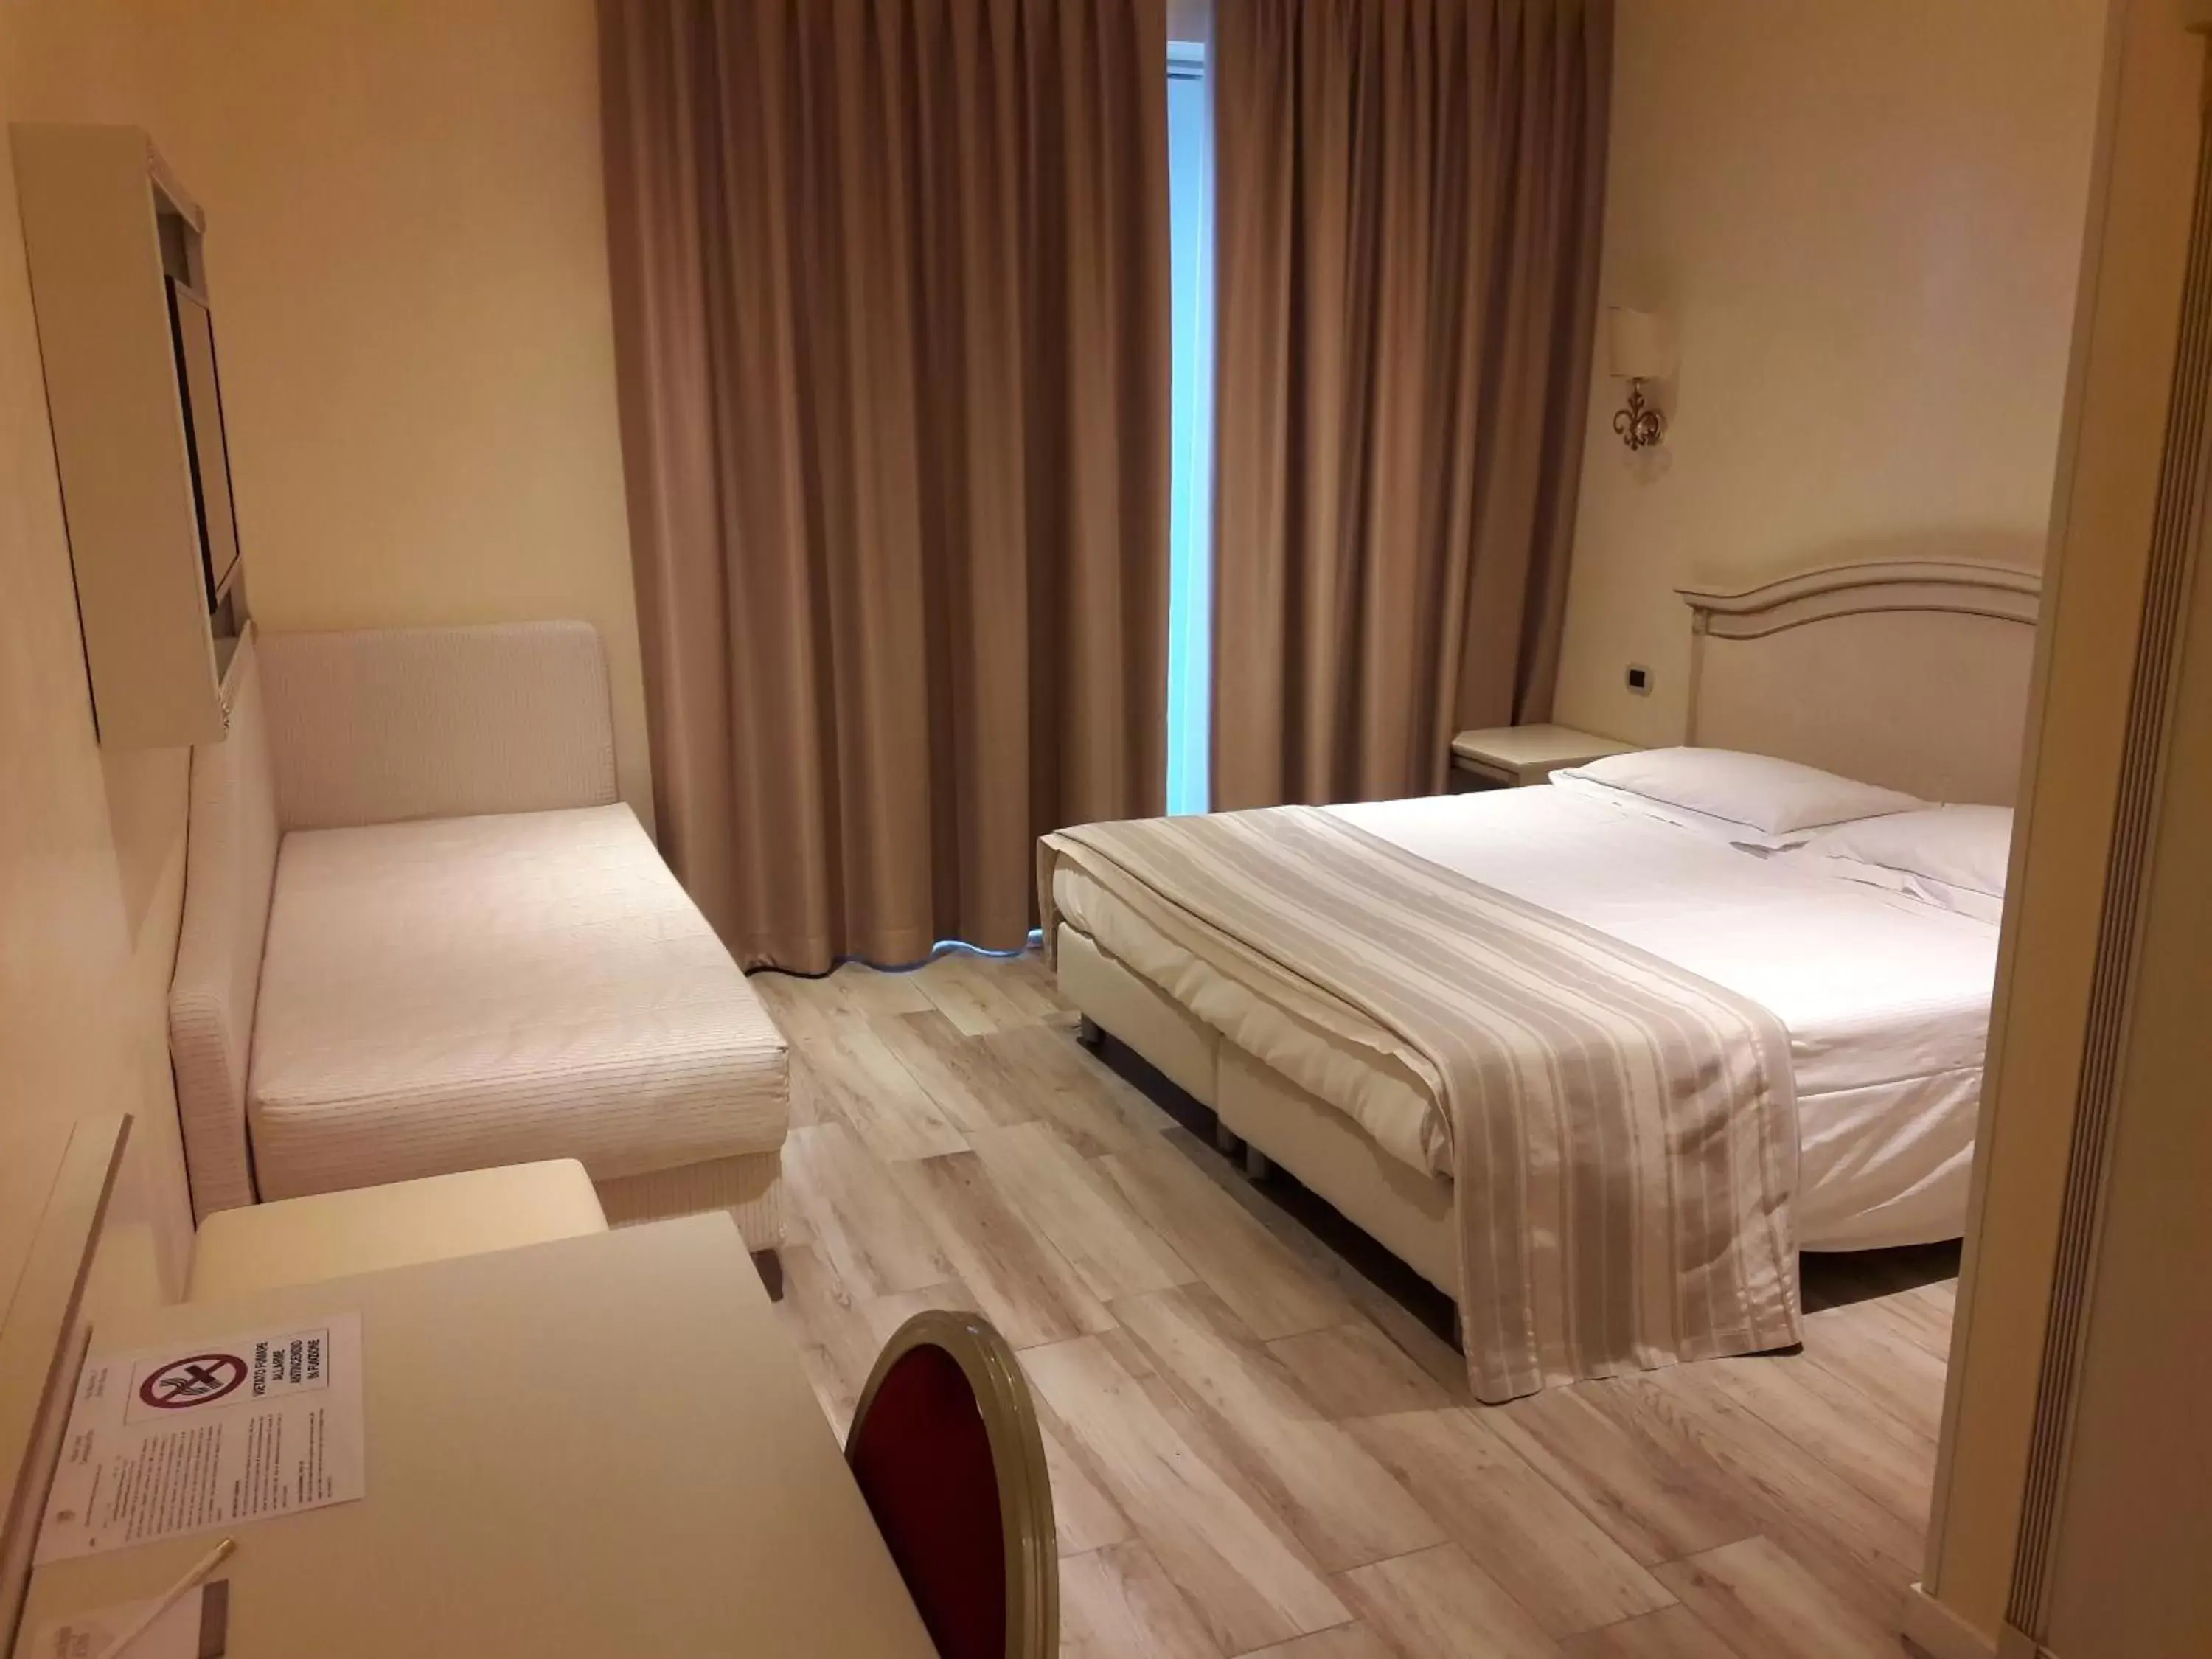 Photo of the whole room, Bed in Palace Hotel "La CONCHIGLIA D' ORO"